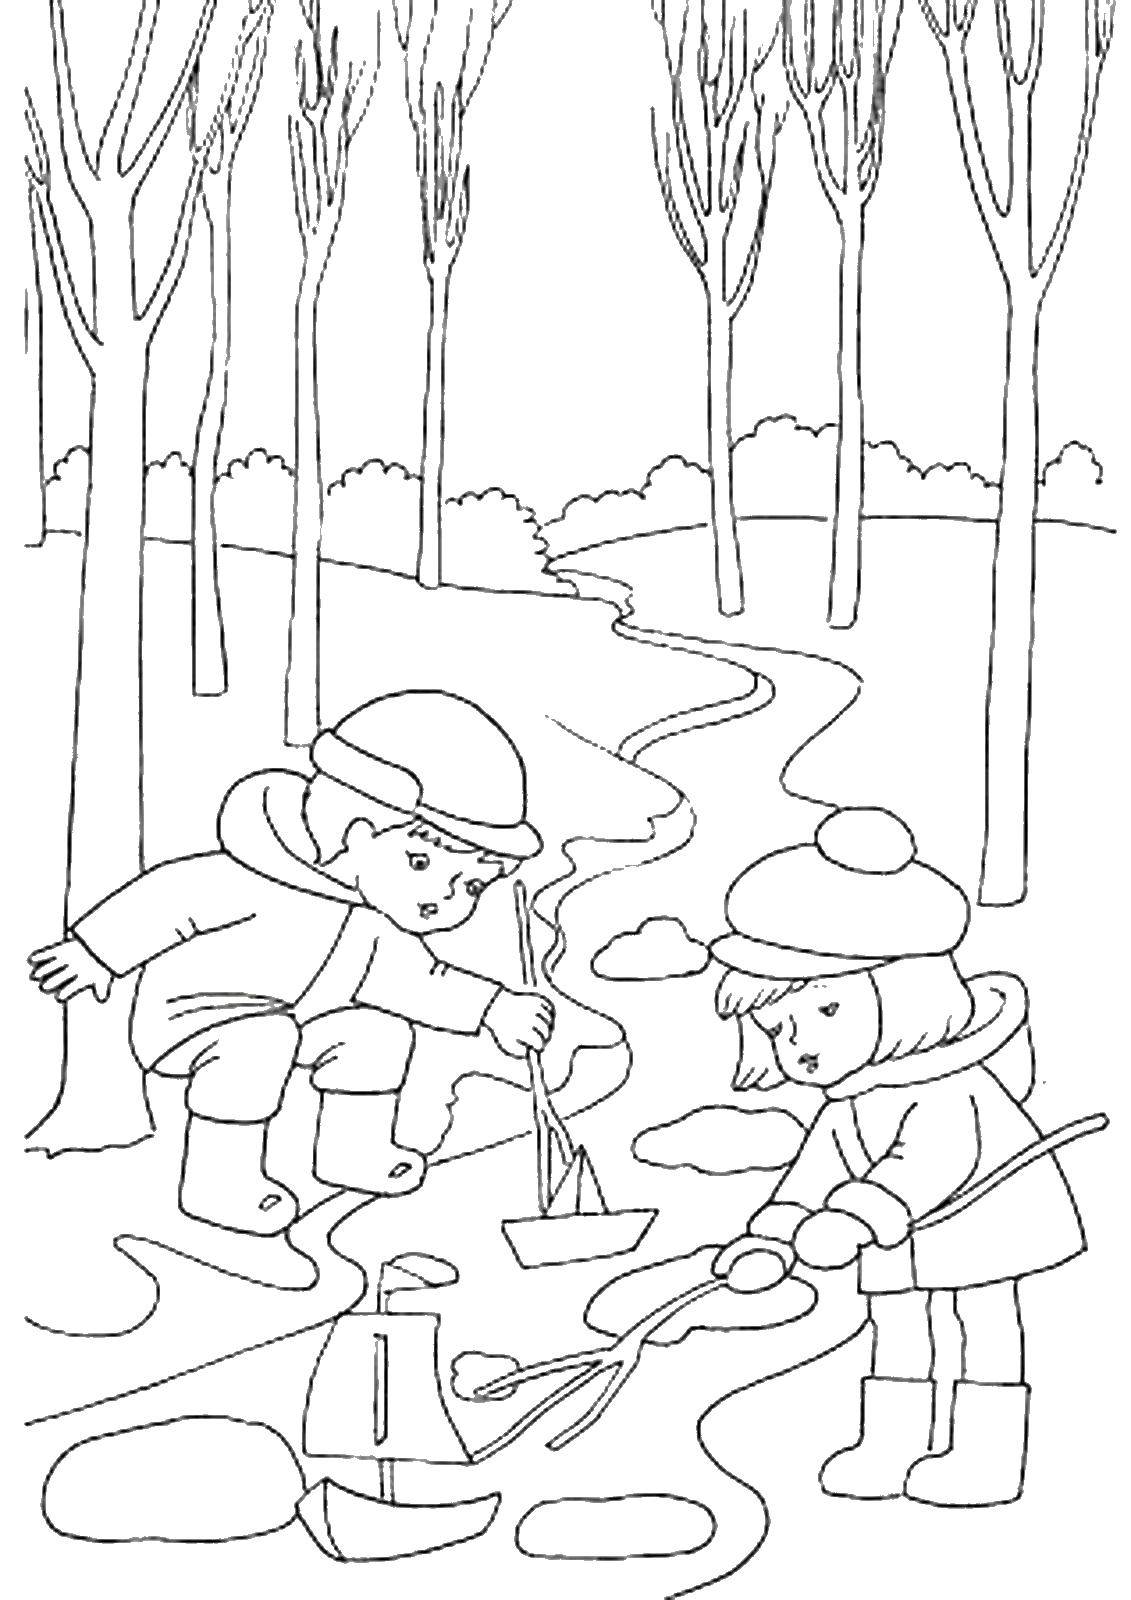 Название: Раскраска Дети играют в кораблик у ручья. Категория: Люди. Теги: кораблик, дети.